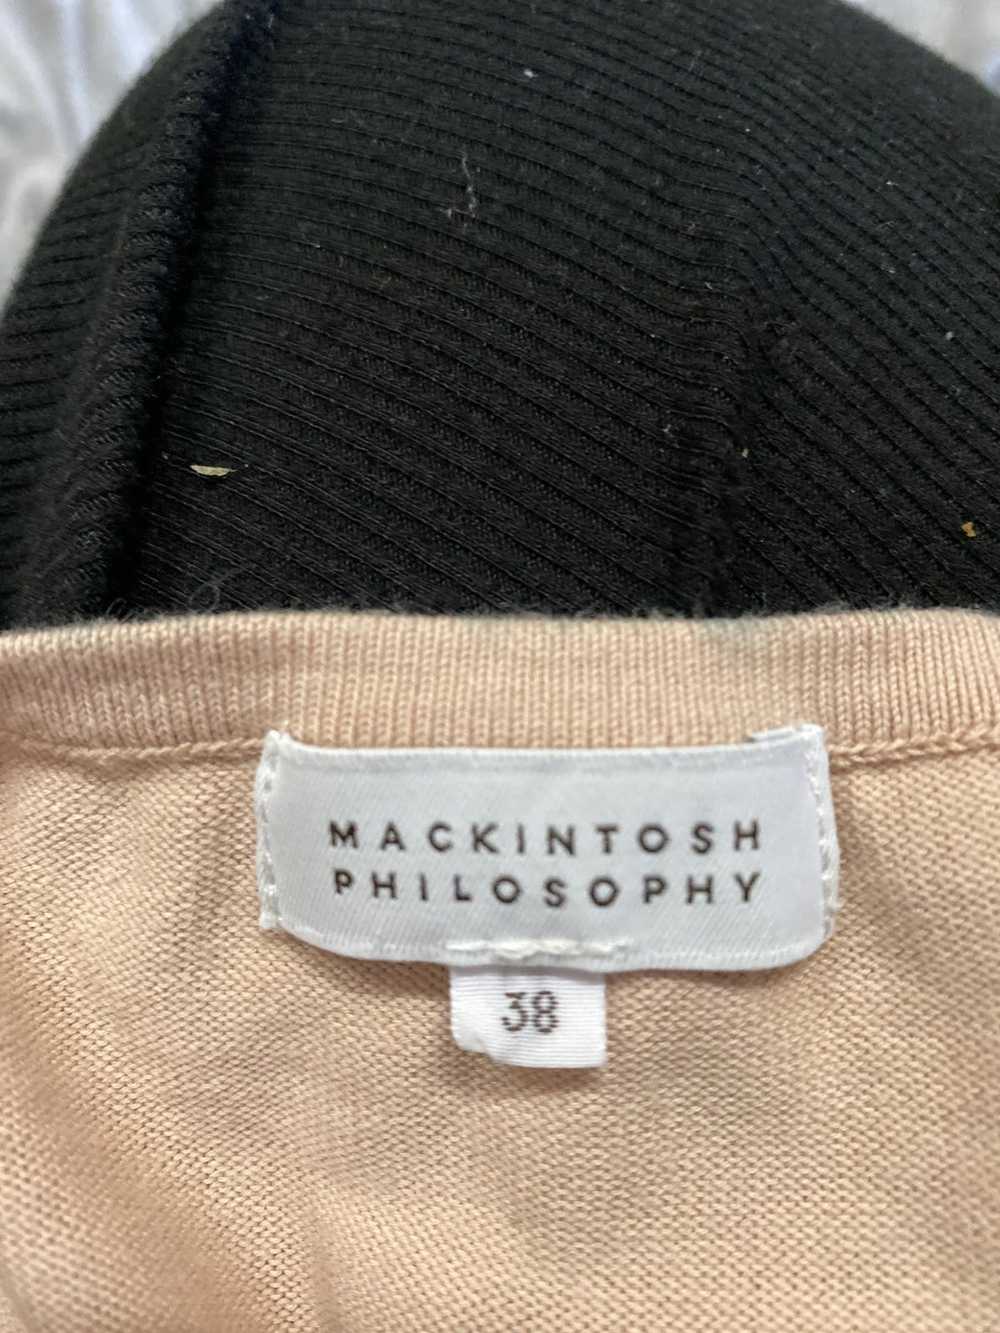 Mackintosh Vintage Mackintosh Philosophy Knit Swe… - image 6